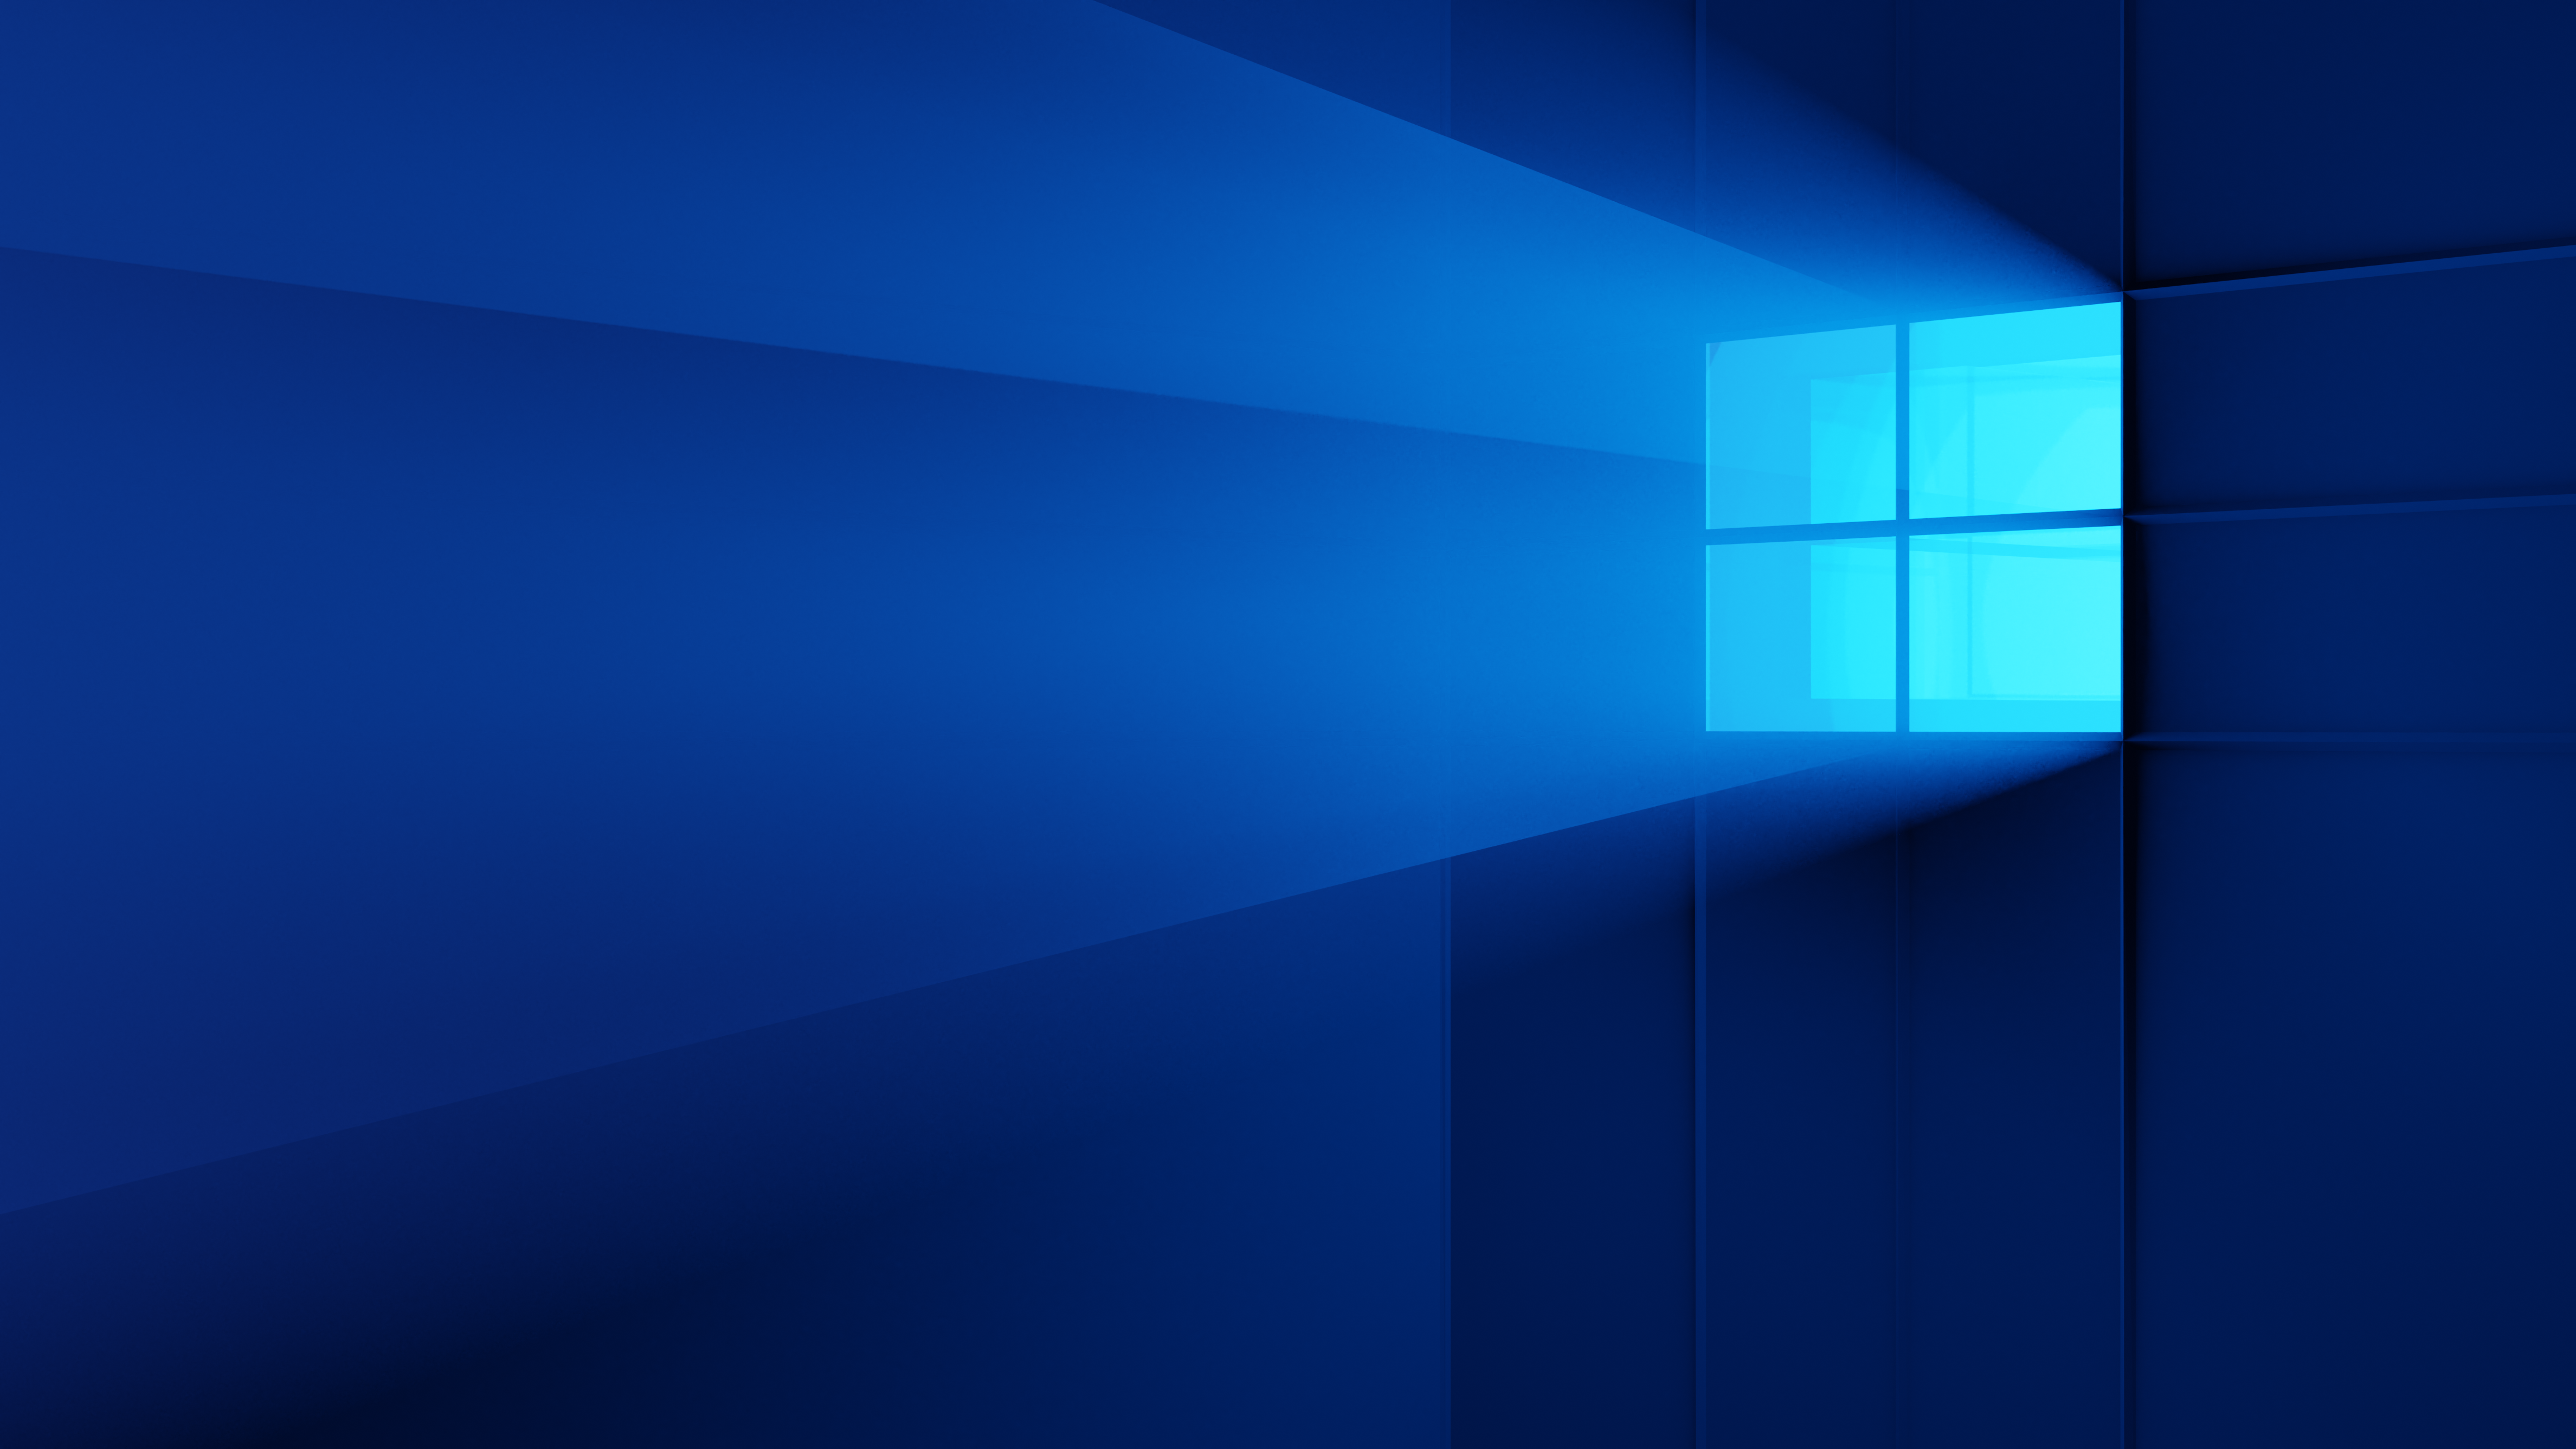 Windows 10 4k wallpaper là một trong những lựa chọn tuyệt vời để cập nhật hình nền máy tính mới nhất của bạn. Tận hưởng độ sắc nét và độ phân giải tuyệt đỉnh của 4K với hàng nghìn hình nền phong cảnh, trừu tượng và nghệ thuật, tạo nên không gian làm việc đầy mê hoặc và sáng tạo.